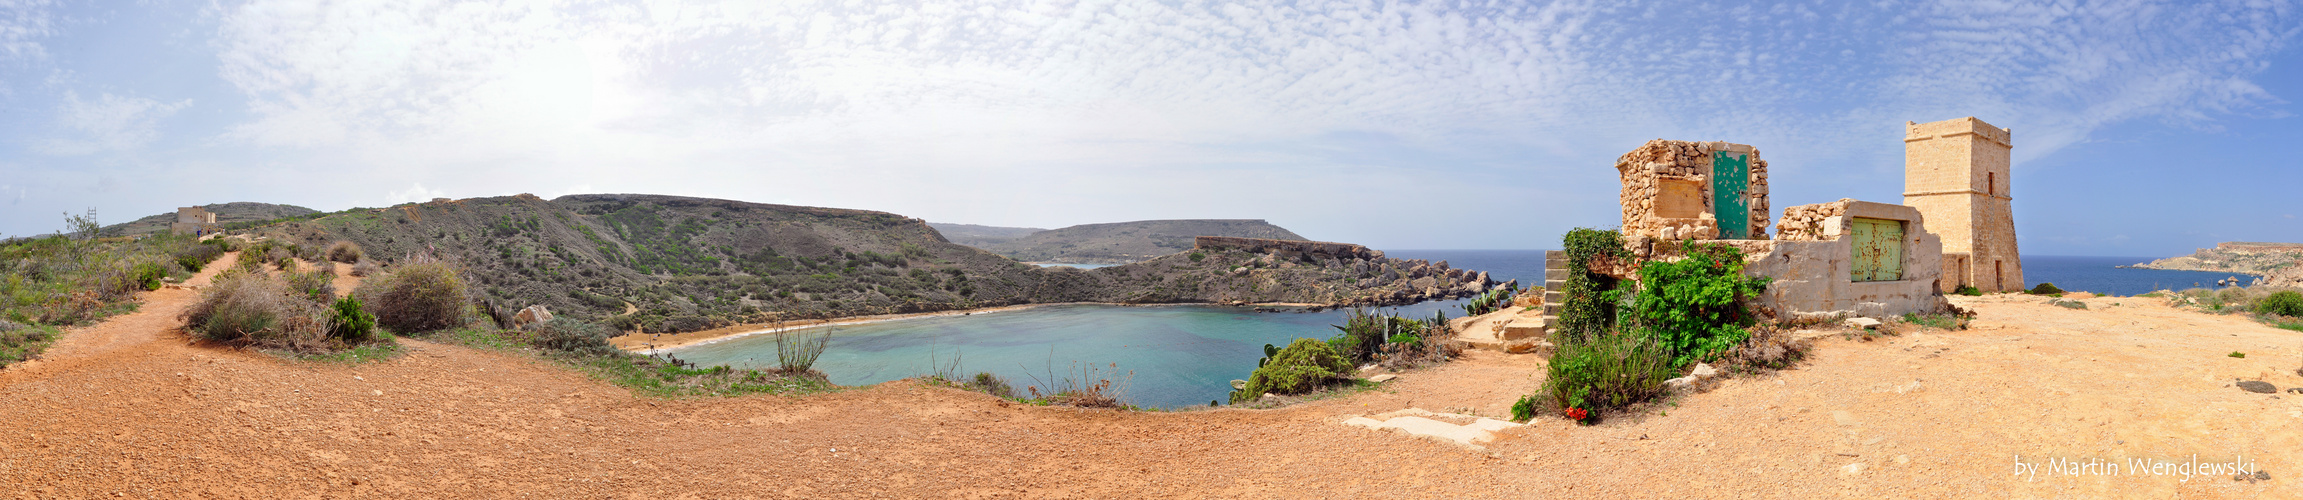 Malta - Ghajn Tuffieha Bay - Panorama